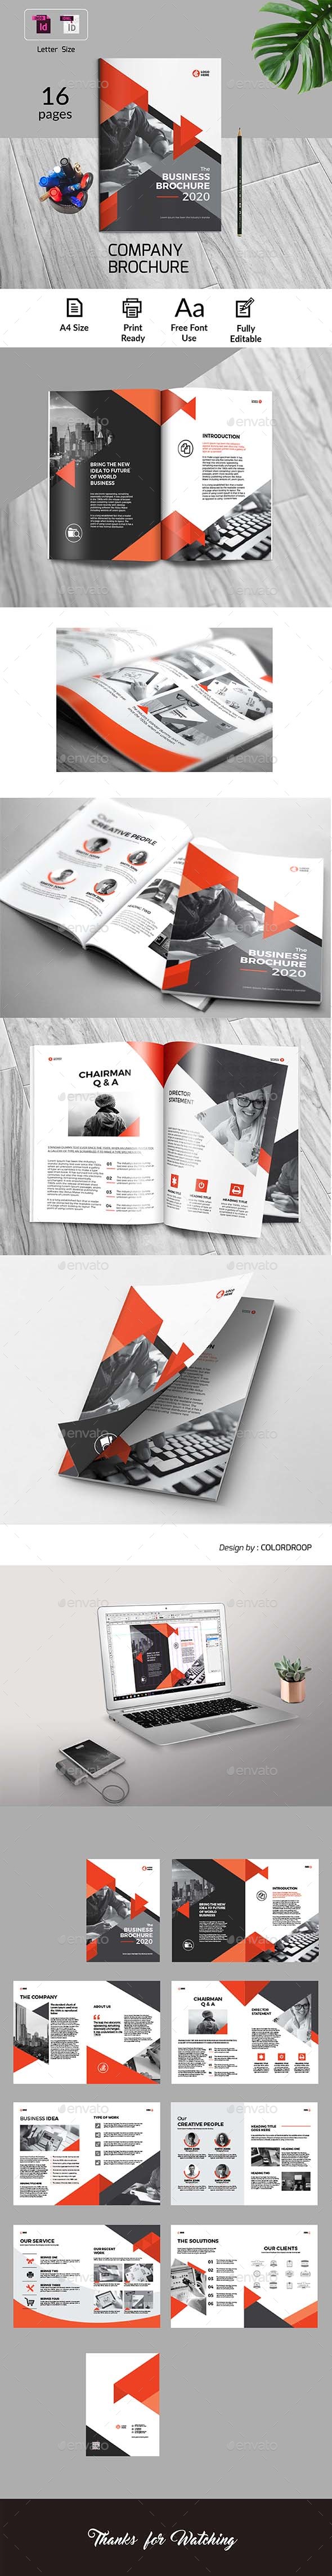 GraphicRiver Company Brochure 21194987